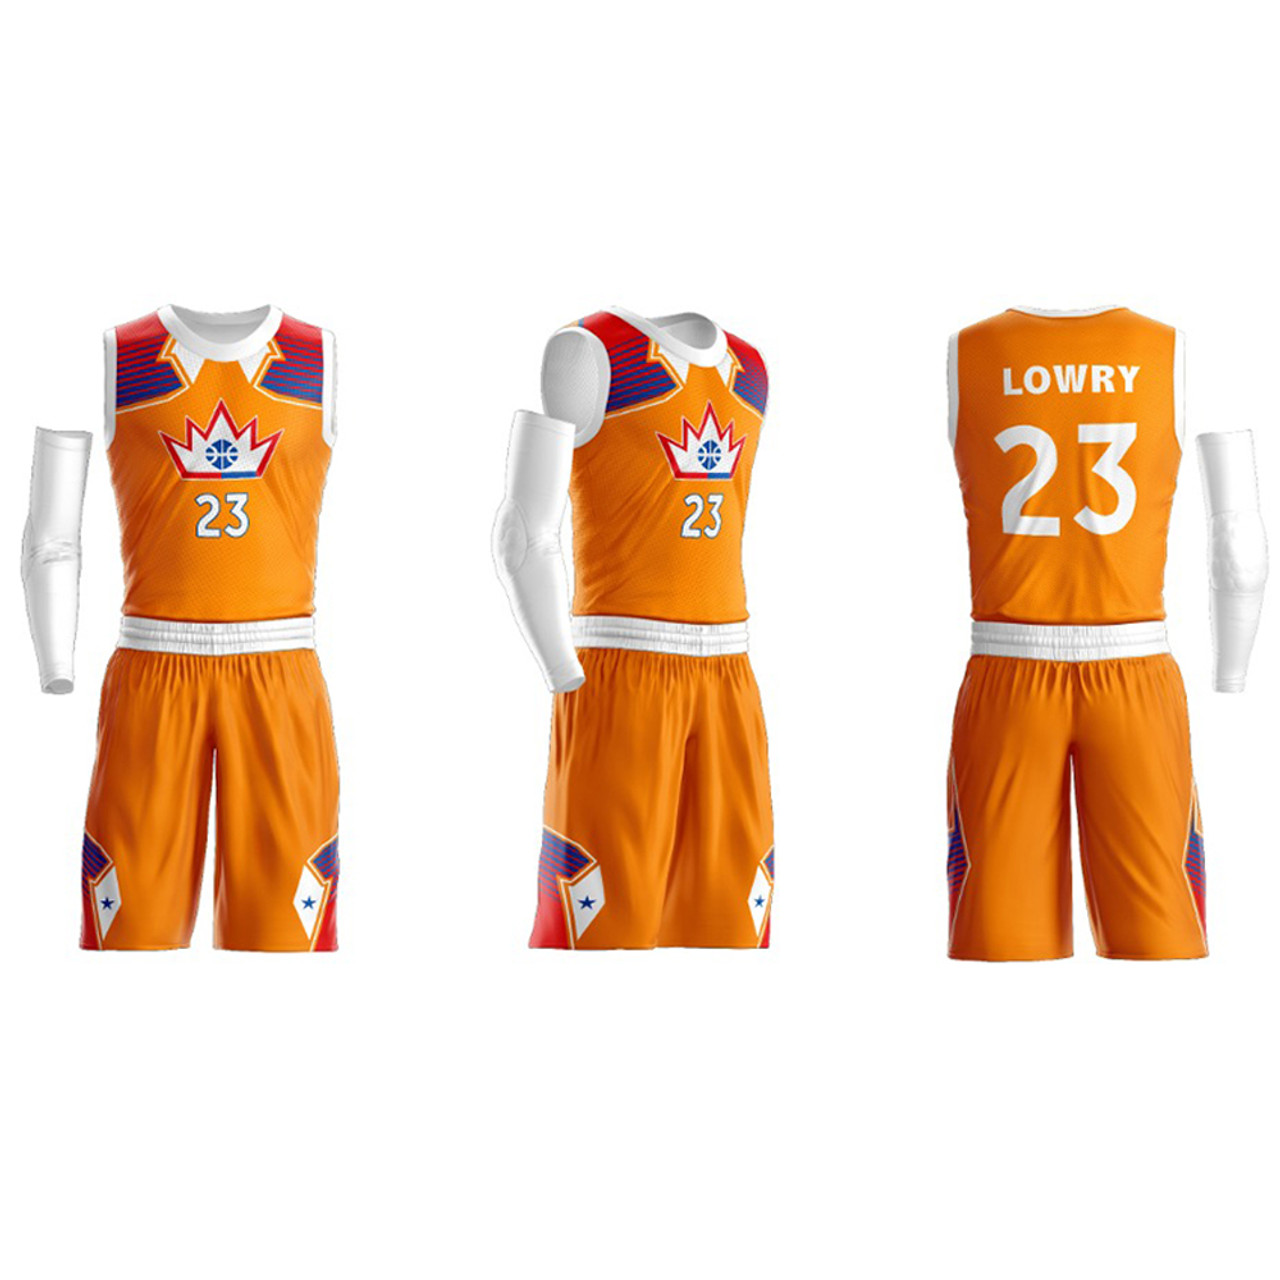 Team name POPS 📣  Basketball uniforms design, Team names